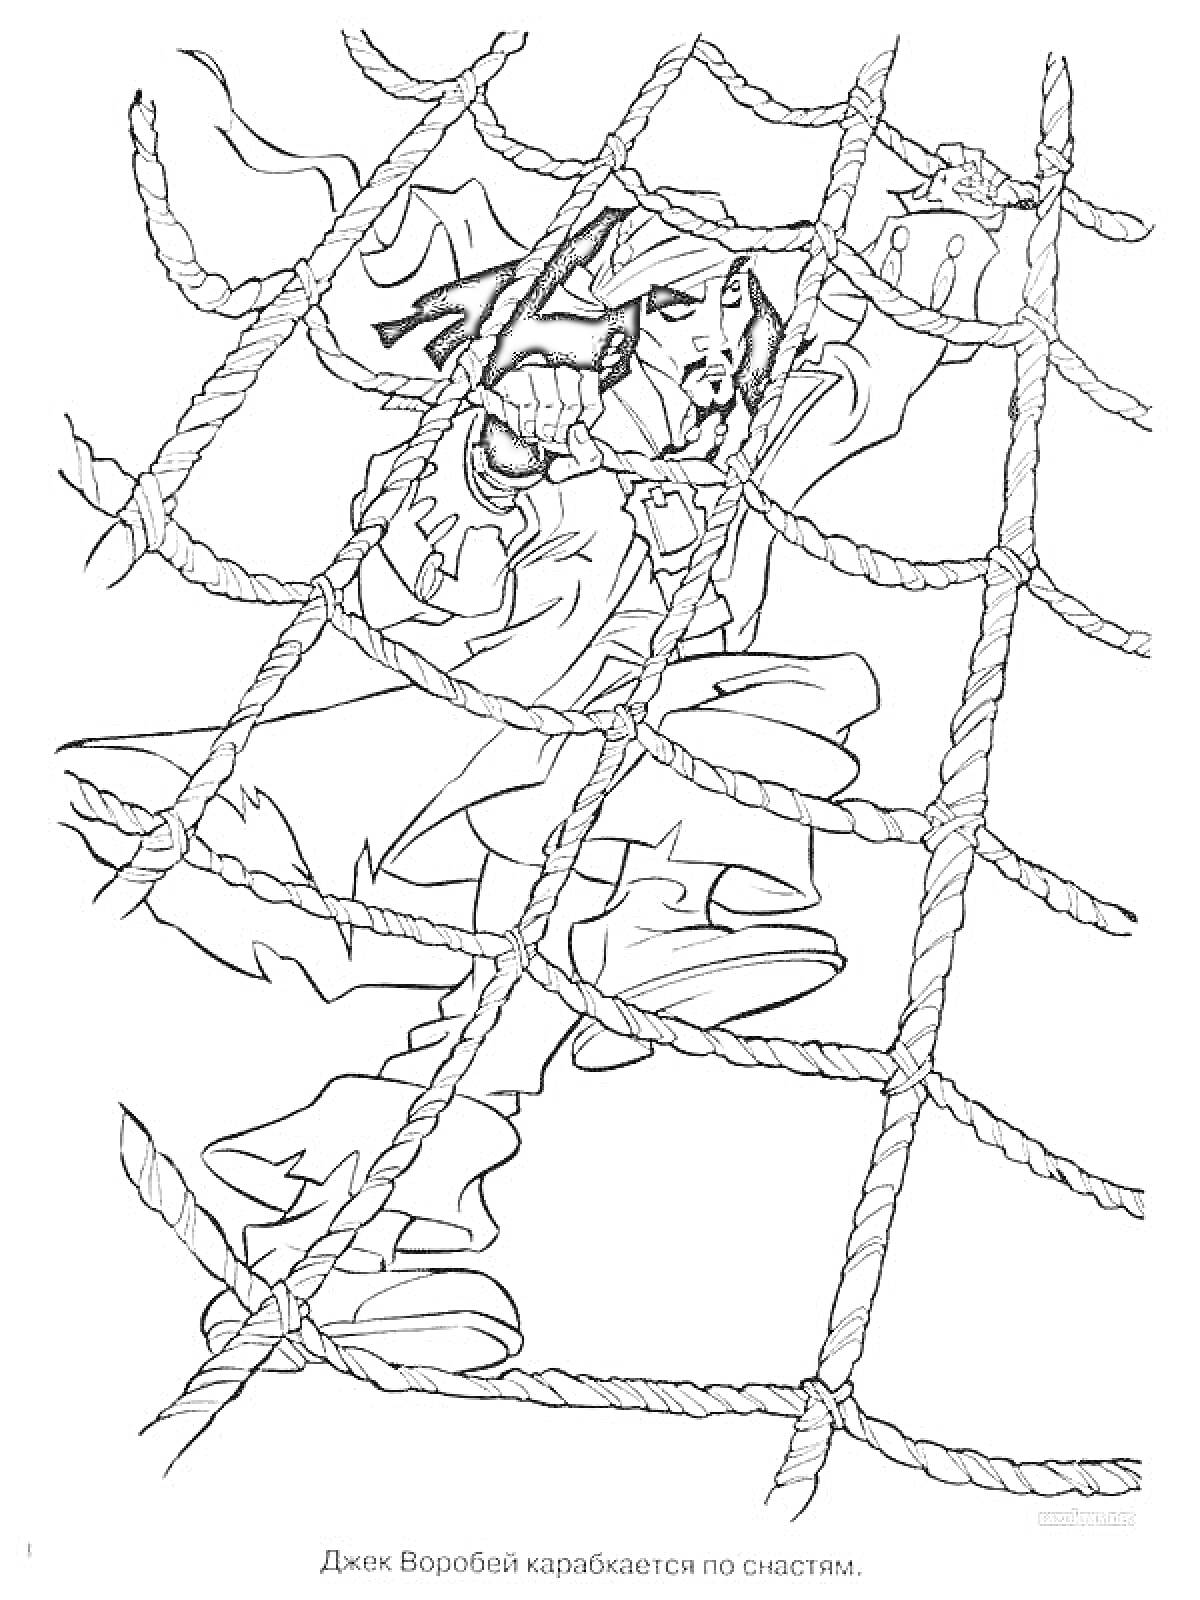 Раскраска Джек Воробей карабкается по снастям, канаты, одежда пирата, волосы, рука, высоко над палубой